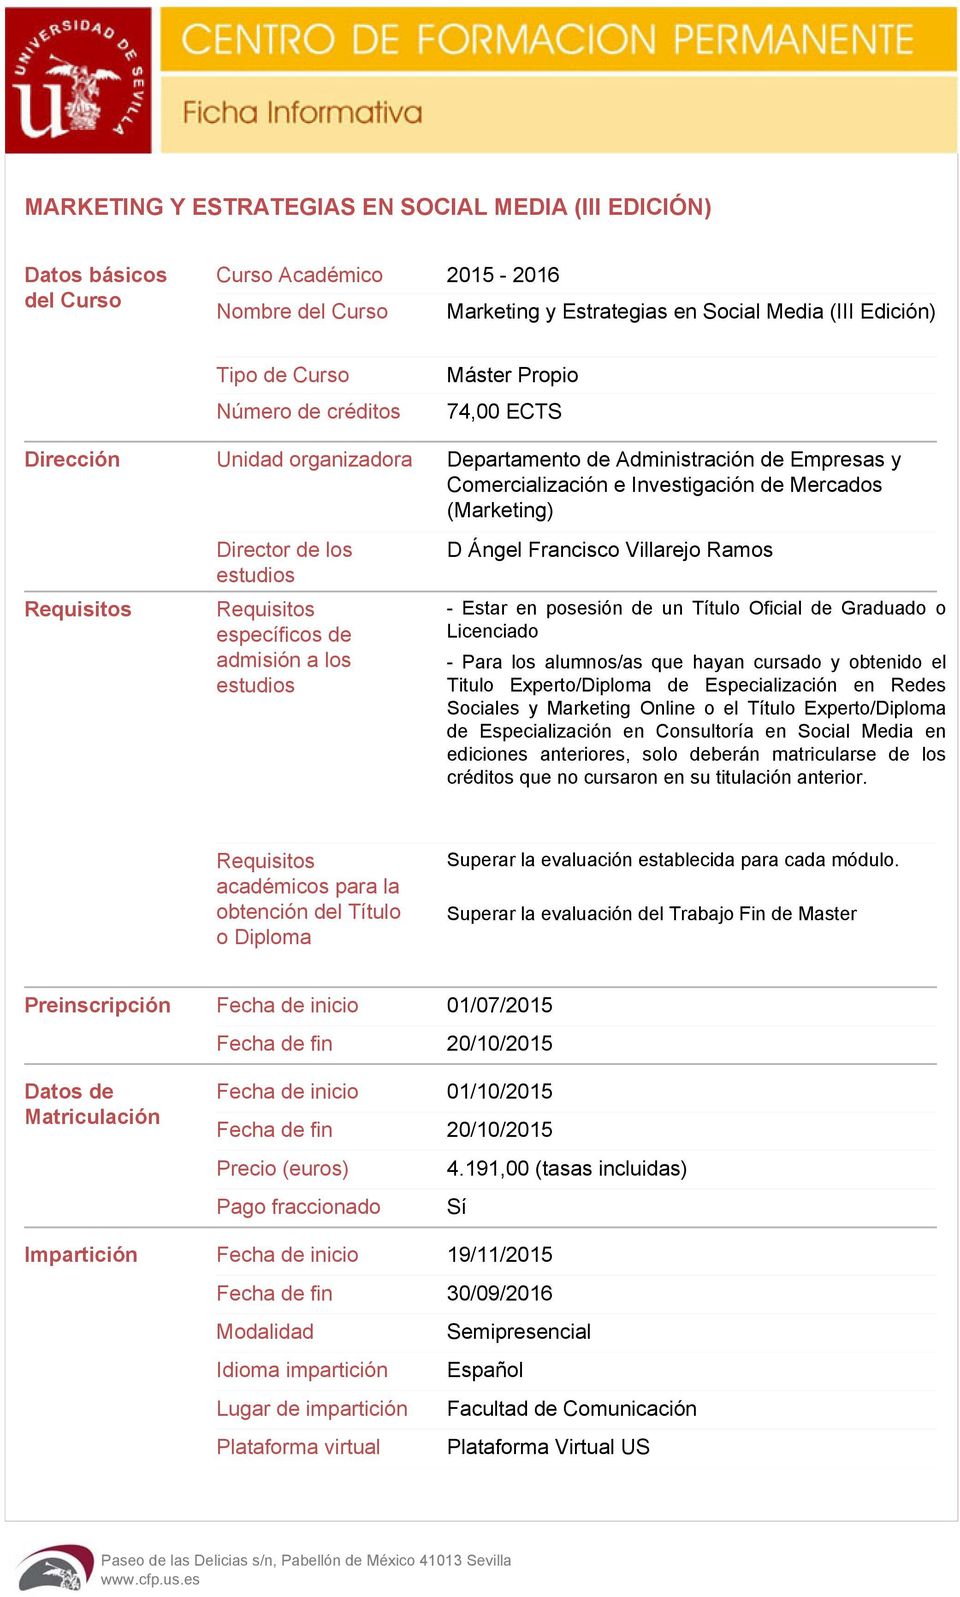 estudios Requisitos específicos de admisión a los estudios D Ángel Francisco Villarejo Ramos - Estar en posesión de un Título Oficial de Graduado o Licenciado - Para los alumnos/as que hayan cursado